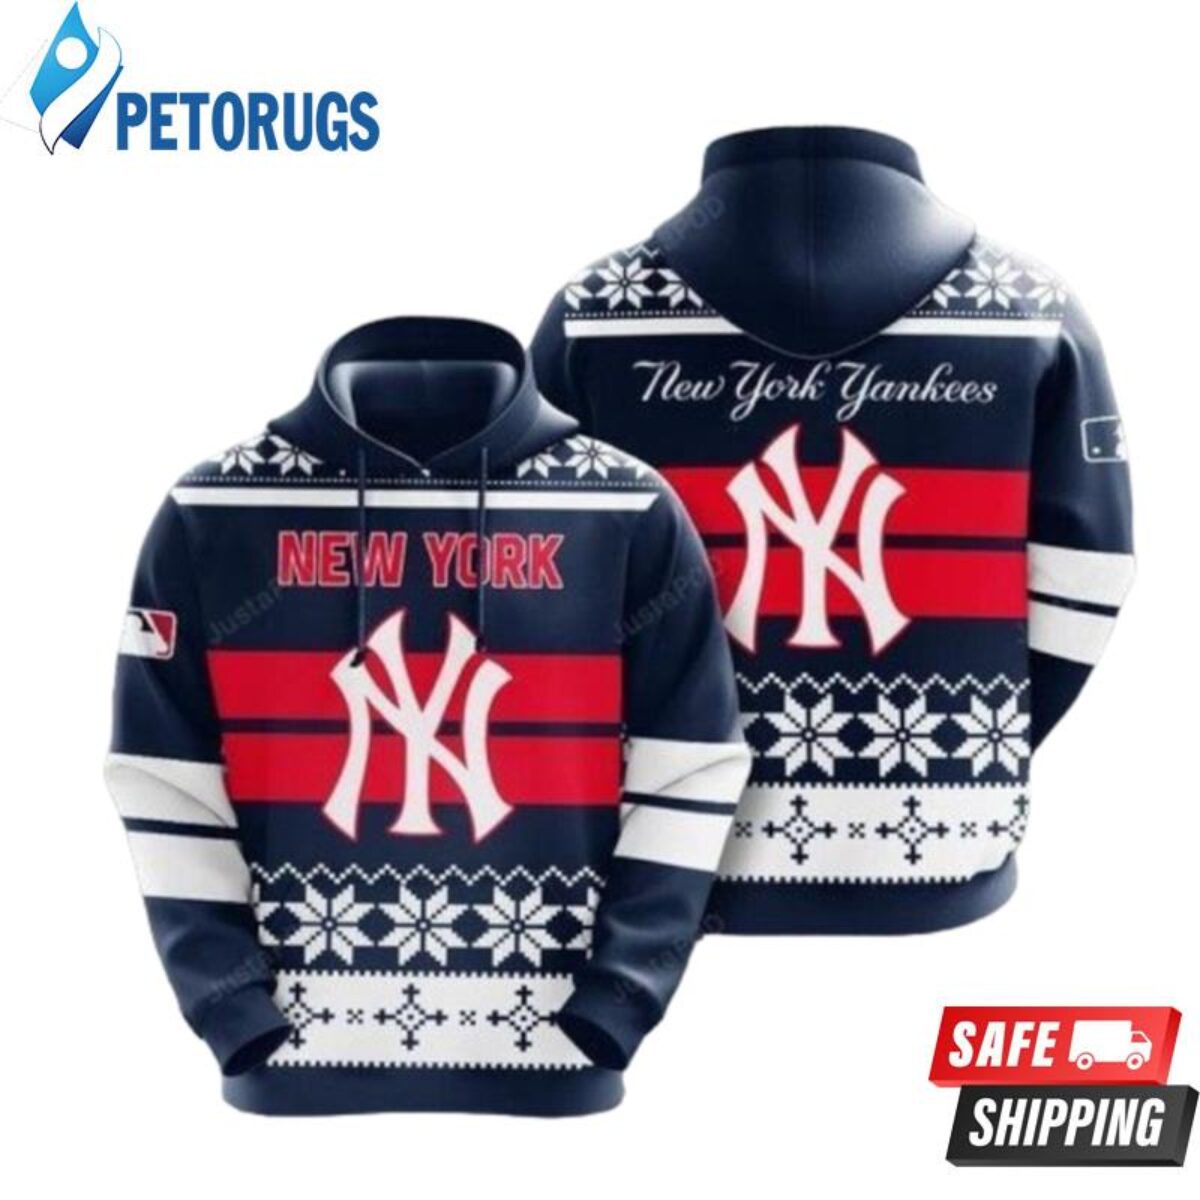 New York Yankees players Star Wars night shirt, hoodie, sweater